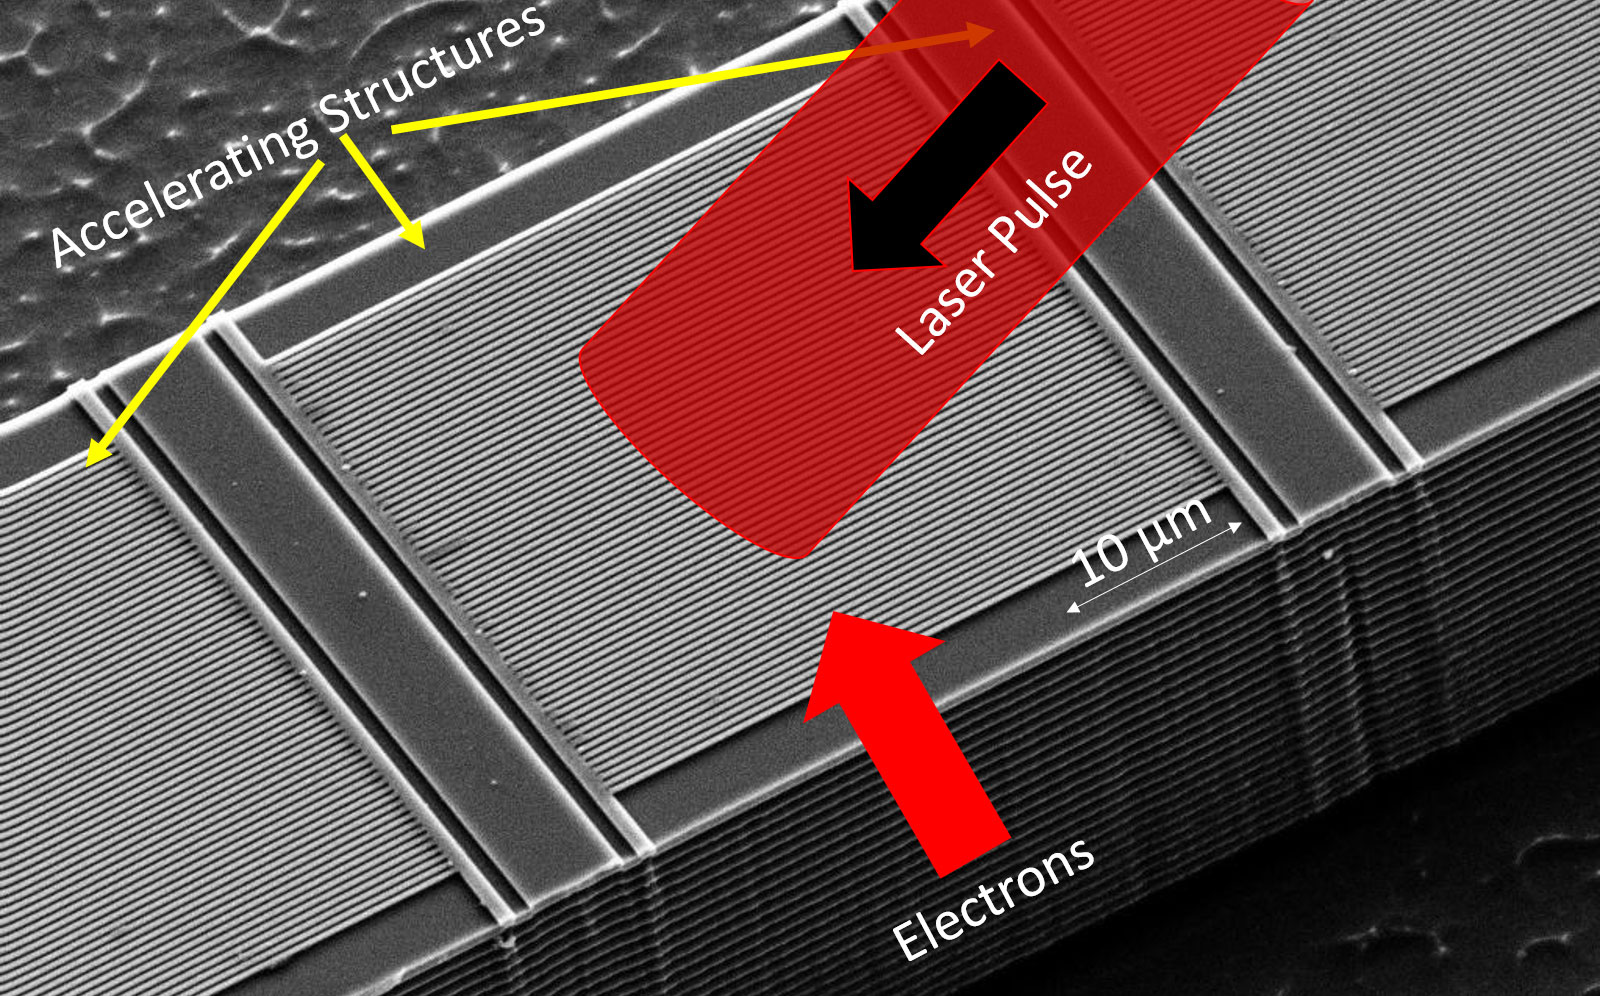 Die Abbildung zeigt die Struktur des Beschleunigers auf einem Mikrochip: Die Elektronen werden extrem nah an einer mikrostrukturierten Glasstruktur (gelbe Pfeile) entlanggeschossen. Von der Seite werden durch die feine Glasstruktur hindurch kurze intensive Laserpulse auf dieElektronen fokussiert, wodurch die Elektronen beschleunigt werden. Die nanostrukturierten Beschleuniger-Strukturen sind für das bloße Auge nur erkennbar, wenn man sich das Bild in hoher Auflösung ansieht (Bild: FAU/Joshua McNeur).